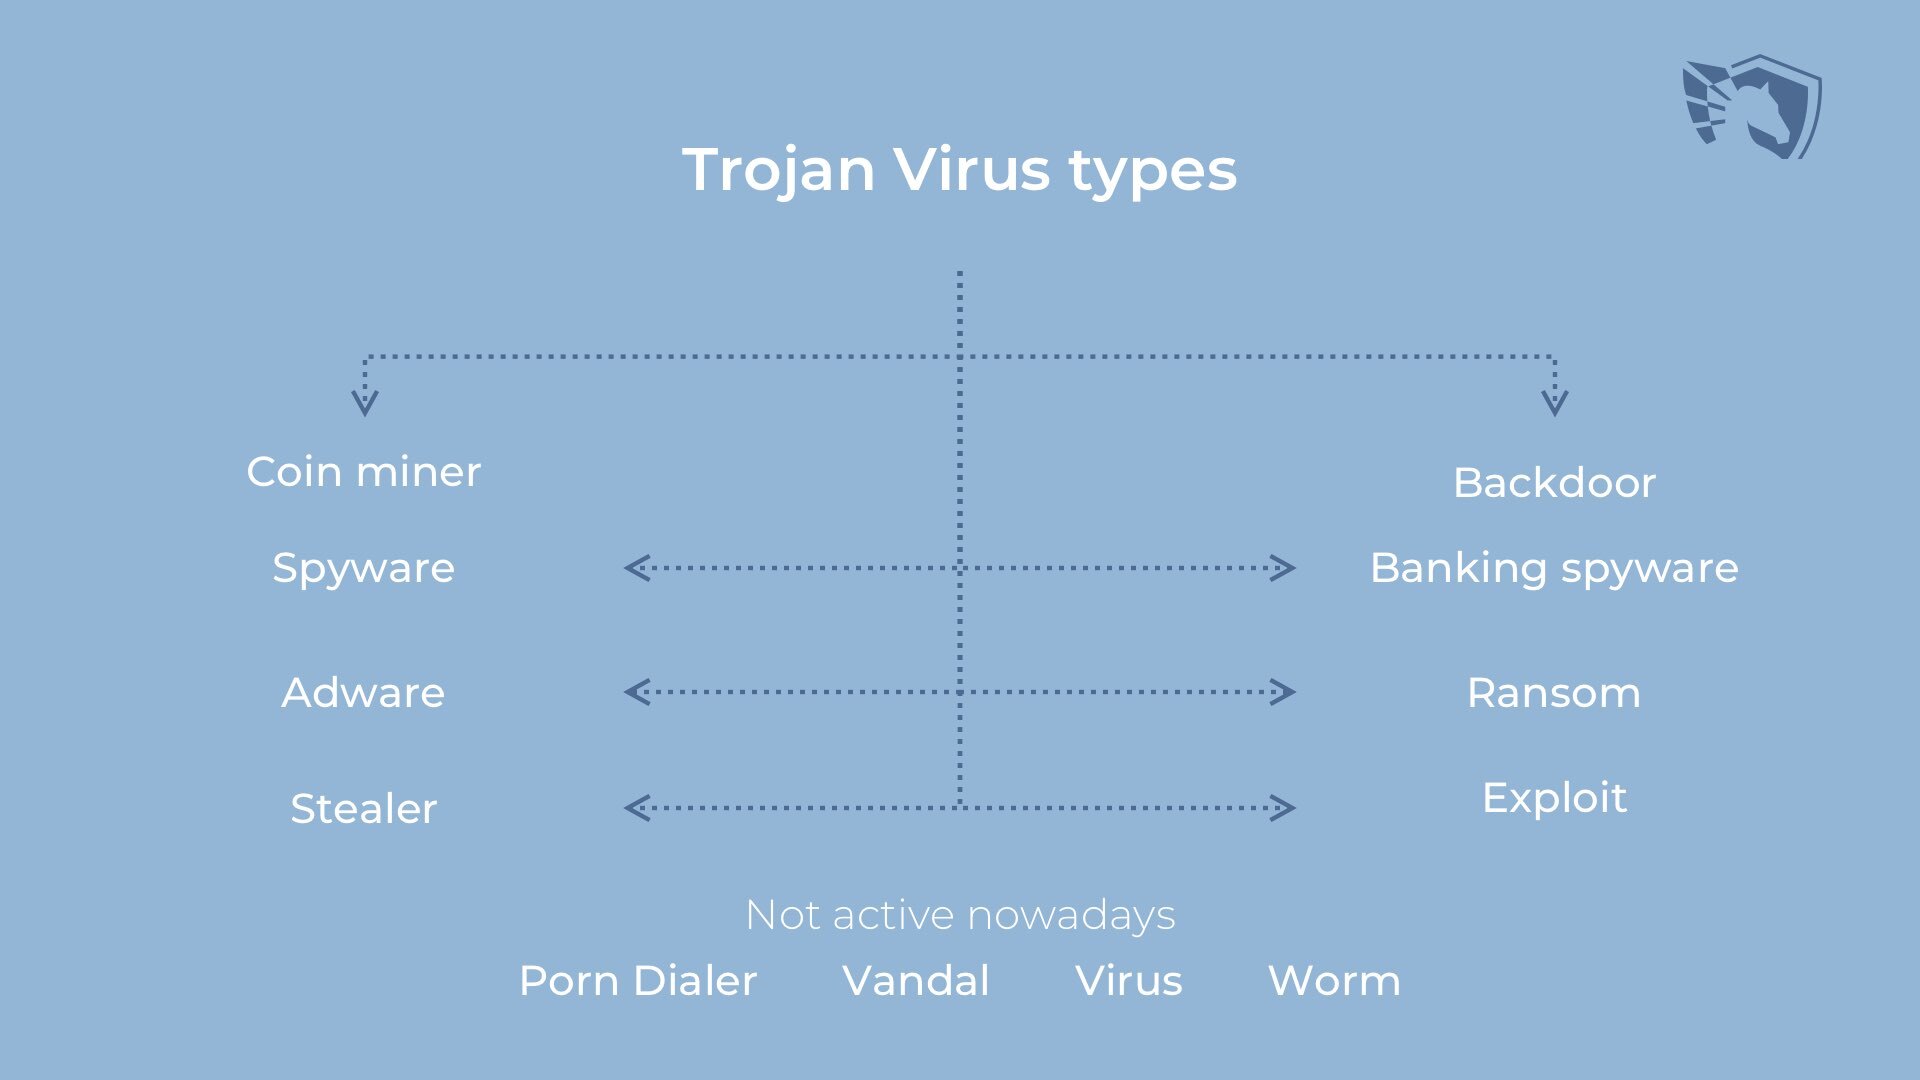 Trojan horse viruses types